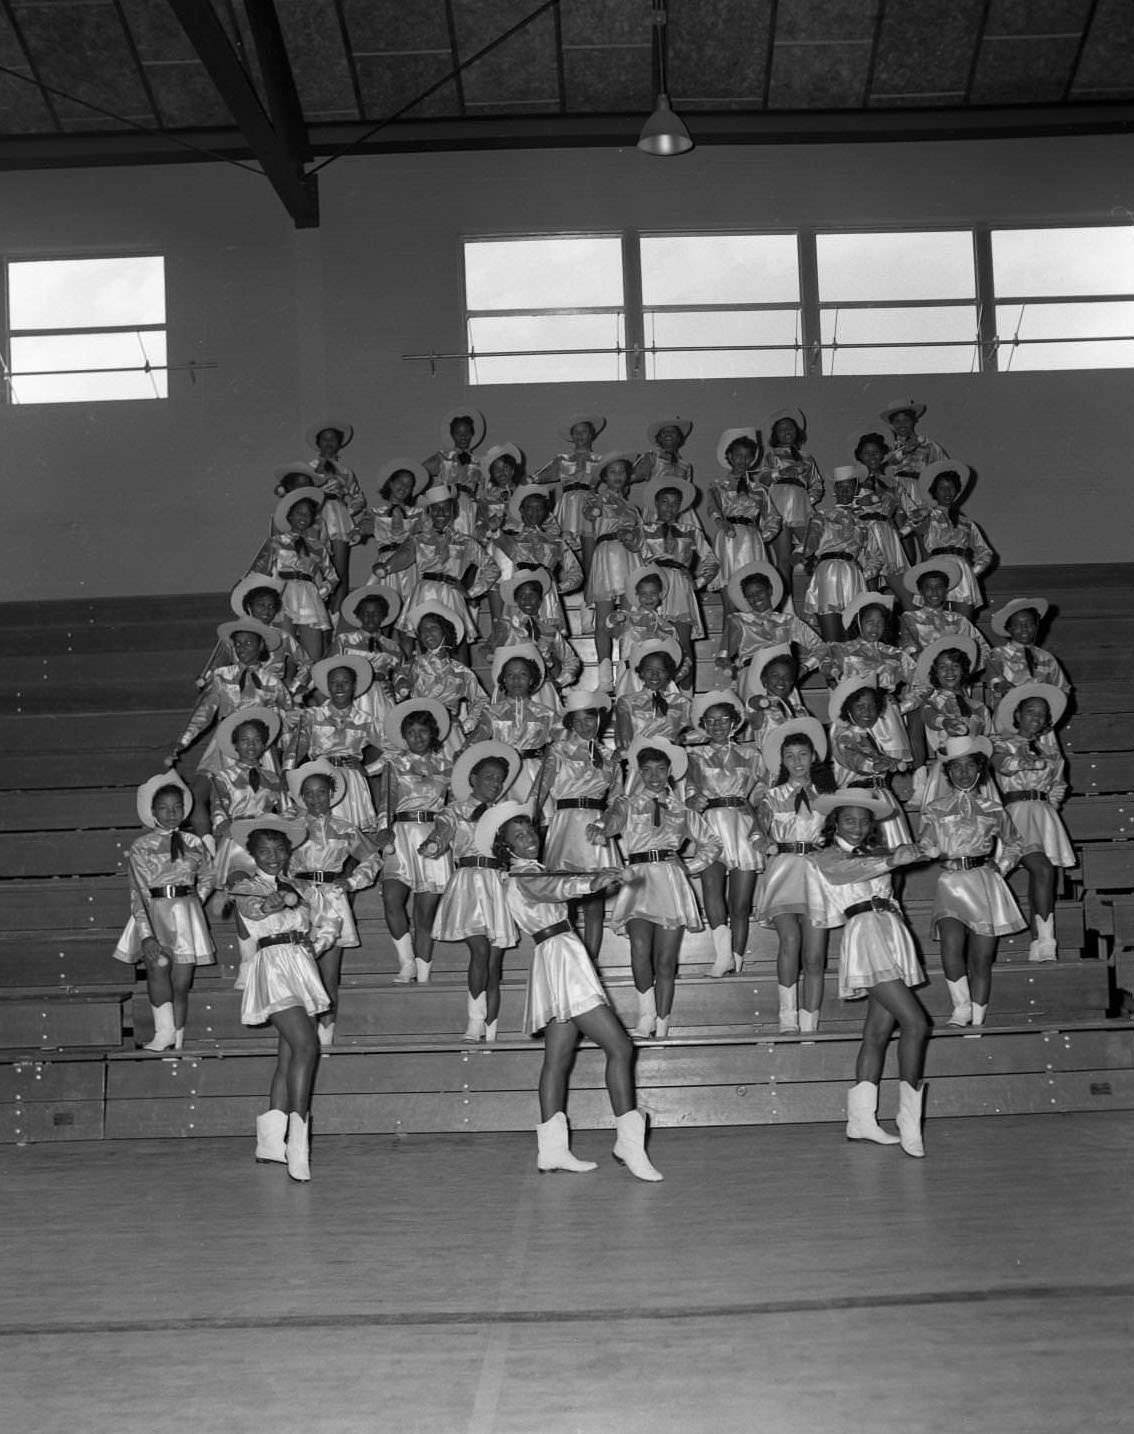 Anderson High School cheerleaders posing on school bleachers, 1955